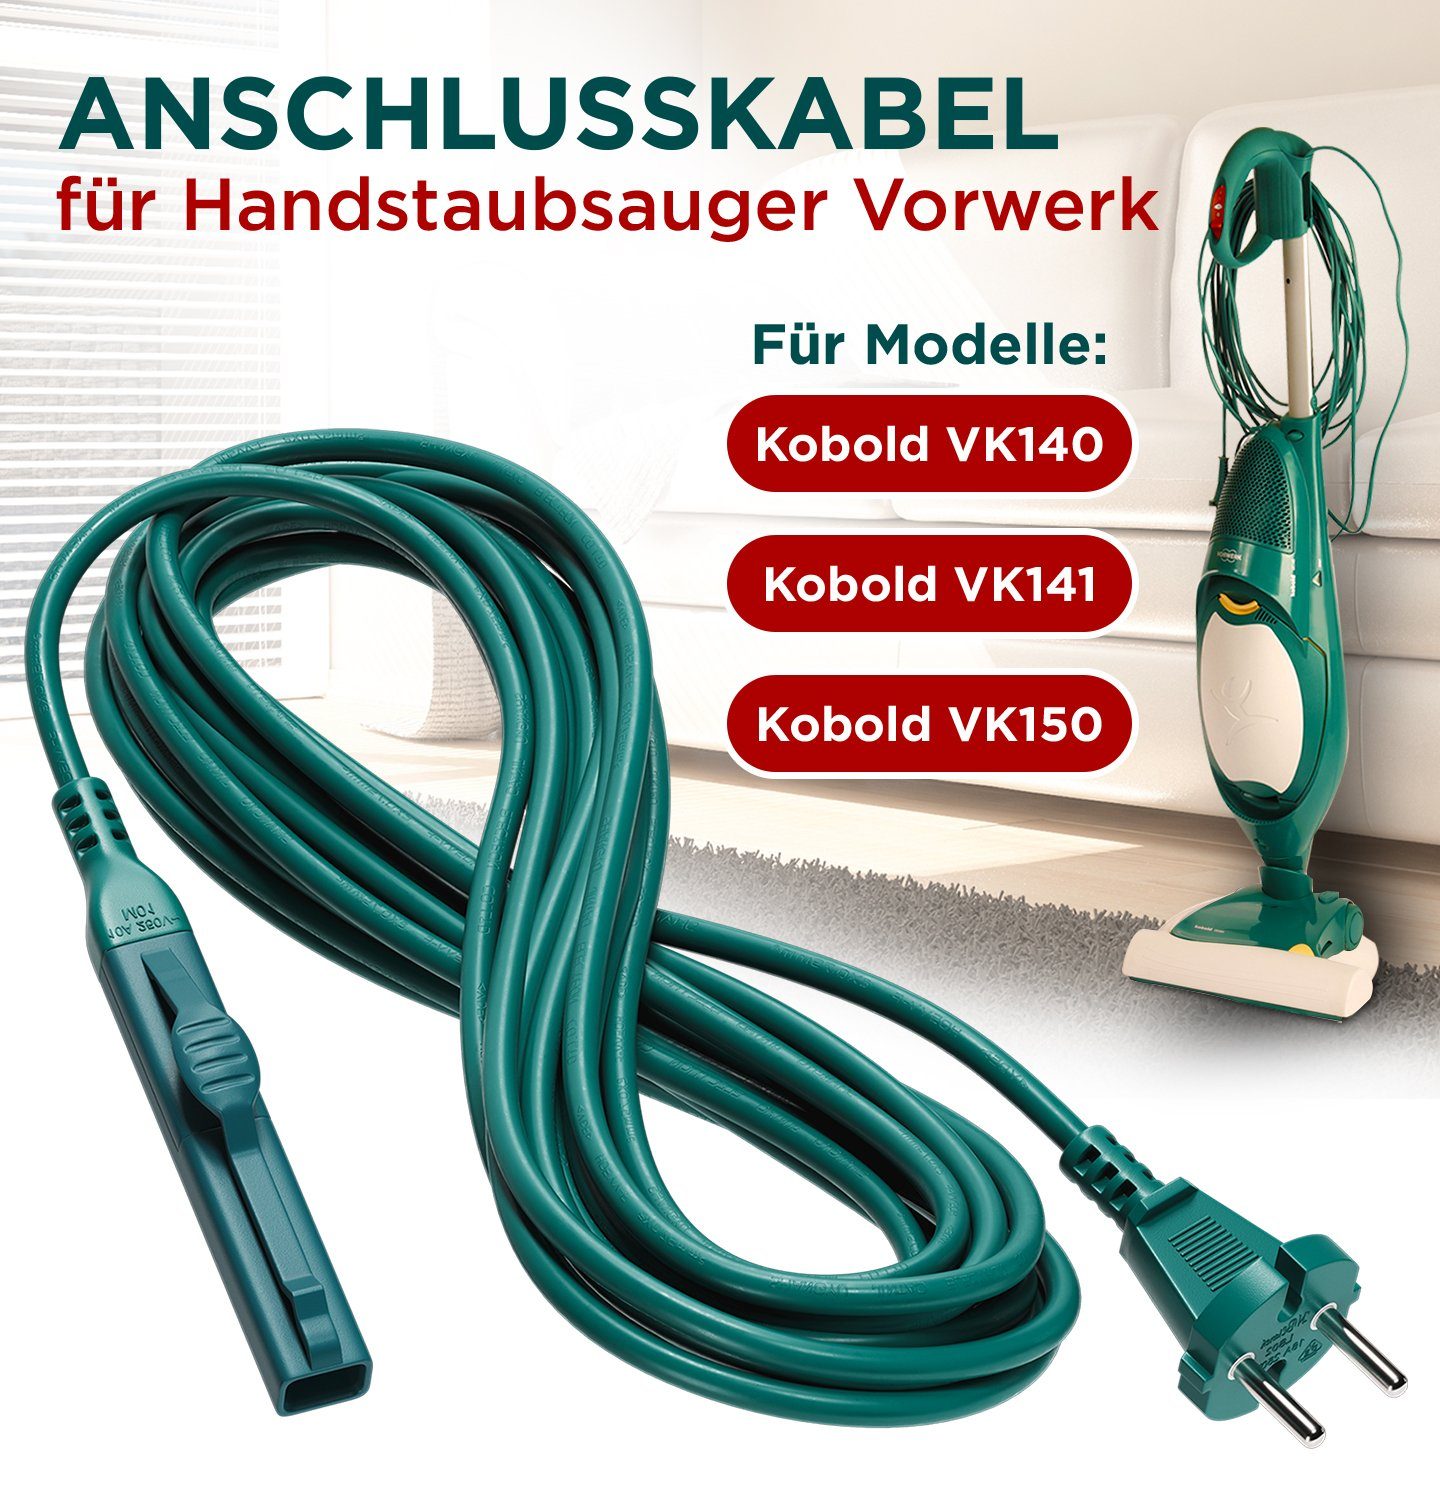 VIOKS Elektrokabel Ersatz / Vorwerk VK140 VK141 VK150 für 10m Handstaubsauger / Kobold Netzkabel, für